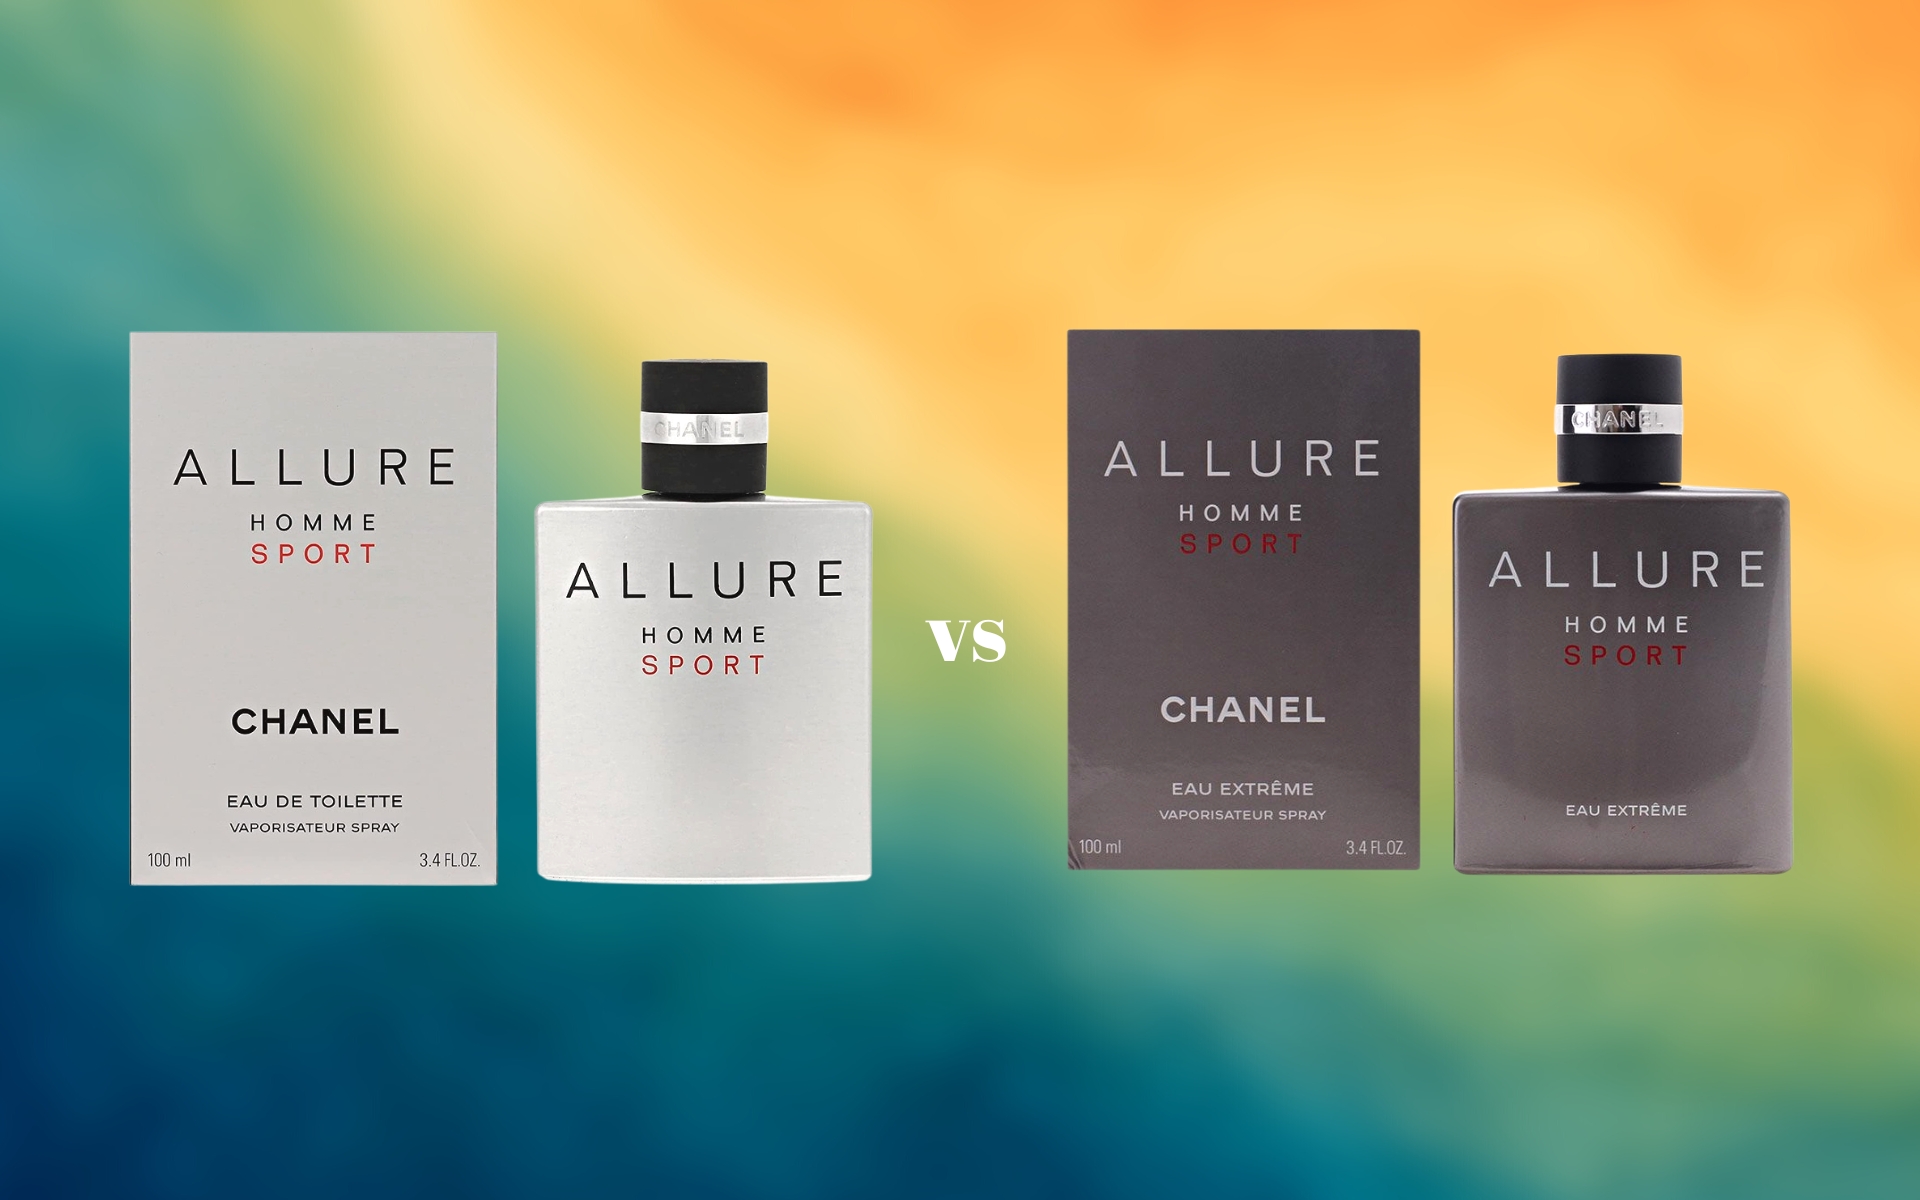 Chanel Allure Homme Sport vs. Eau Extreme Comparison